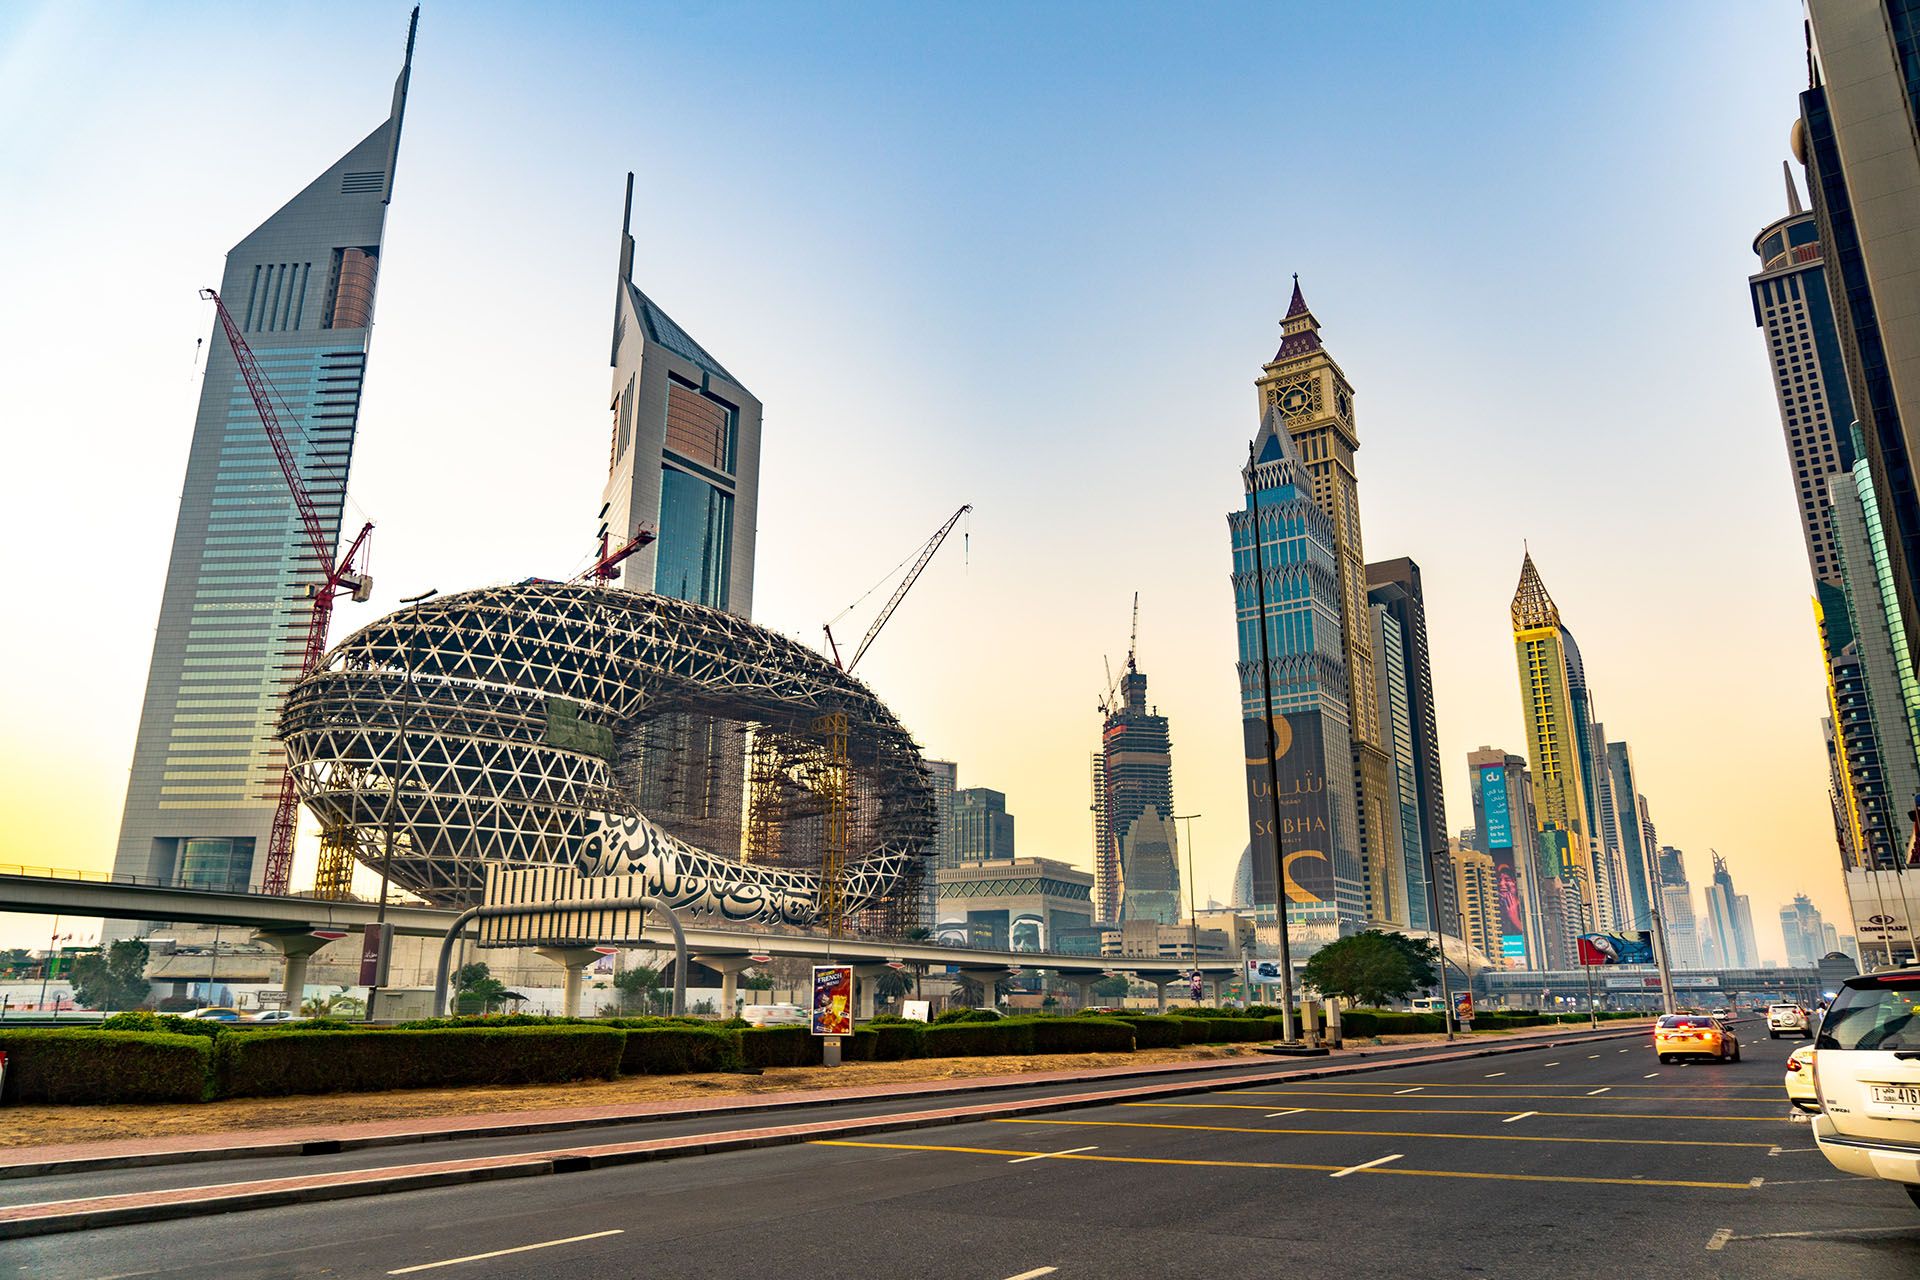 O Calatorie Prin Arhitectura Uimitoare a Dubaiului